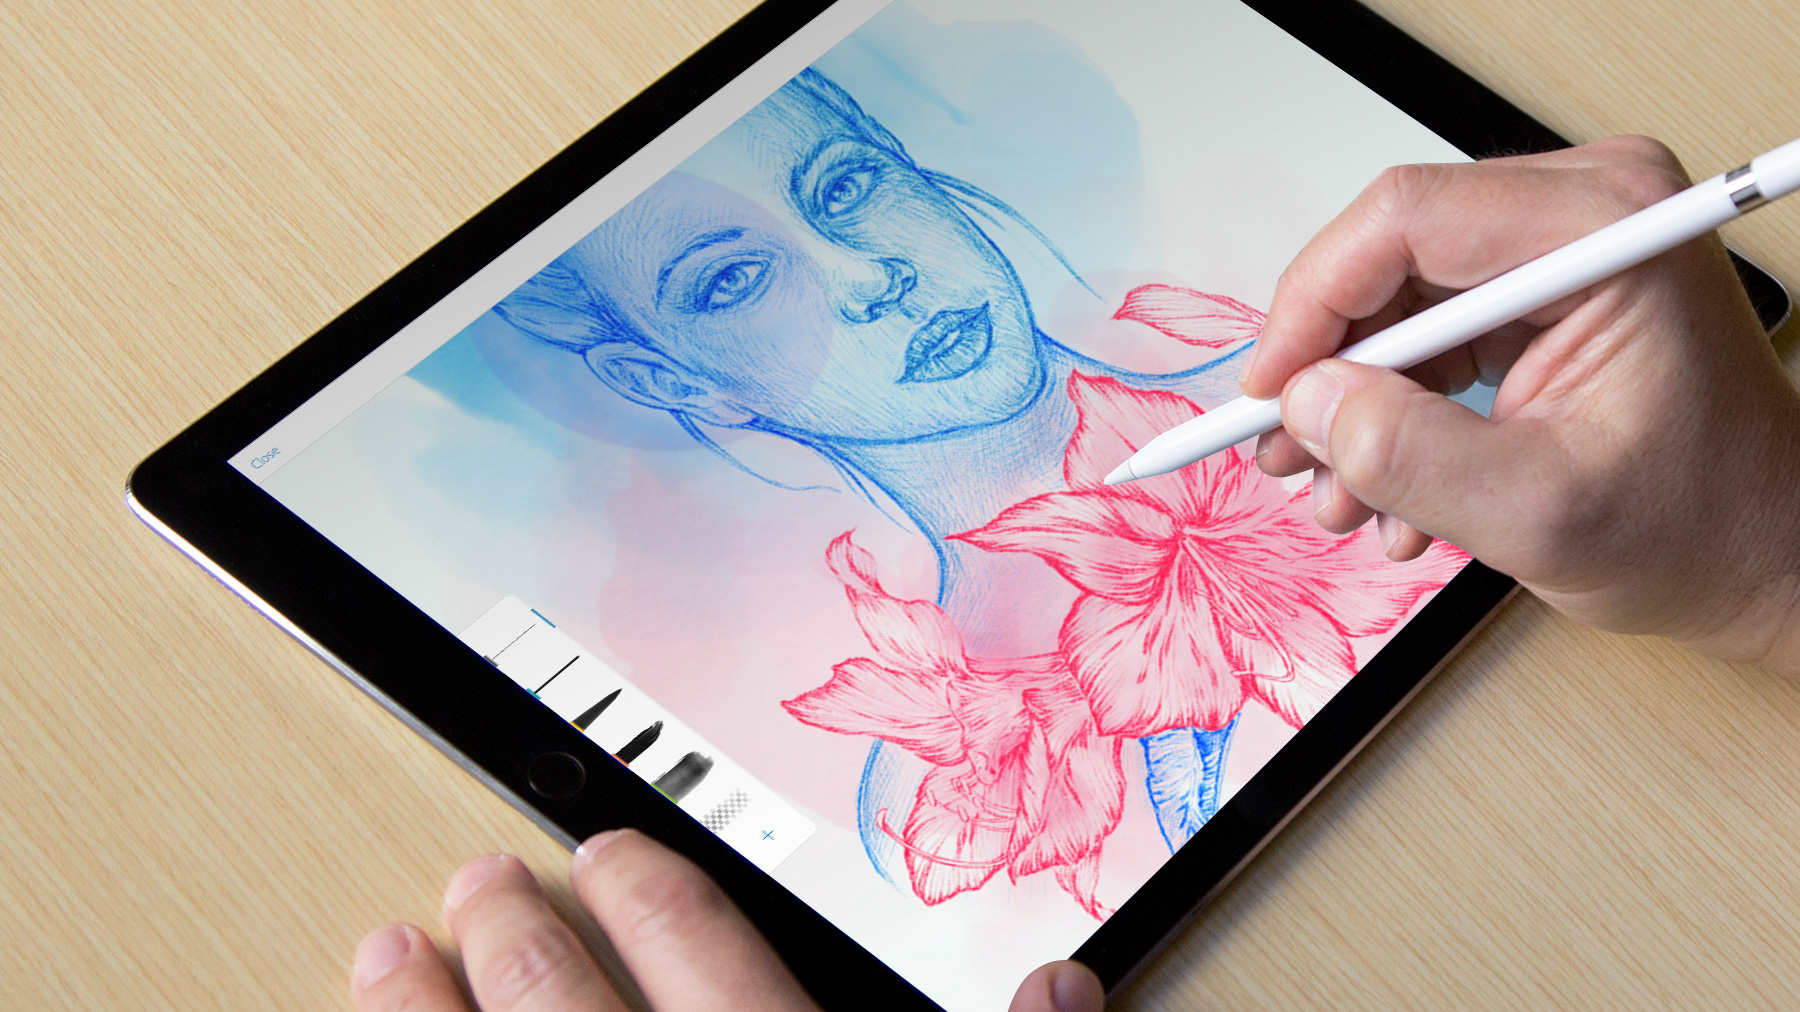 سوني تُقدّم تطبيق الرسم Sketch لمستخدمي iOS